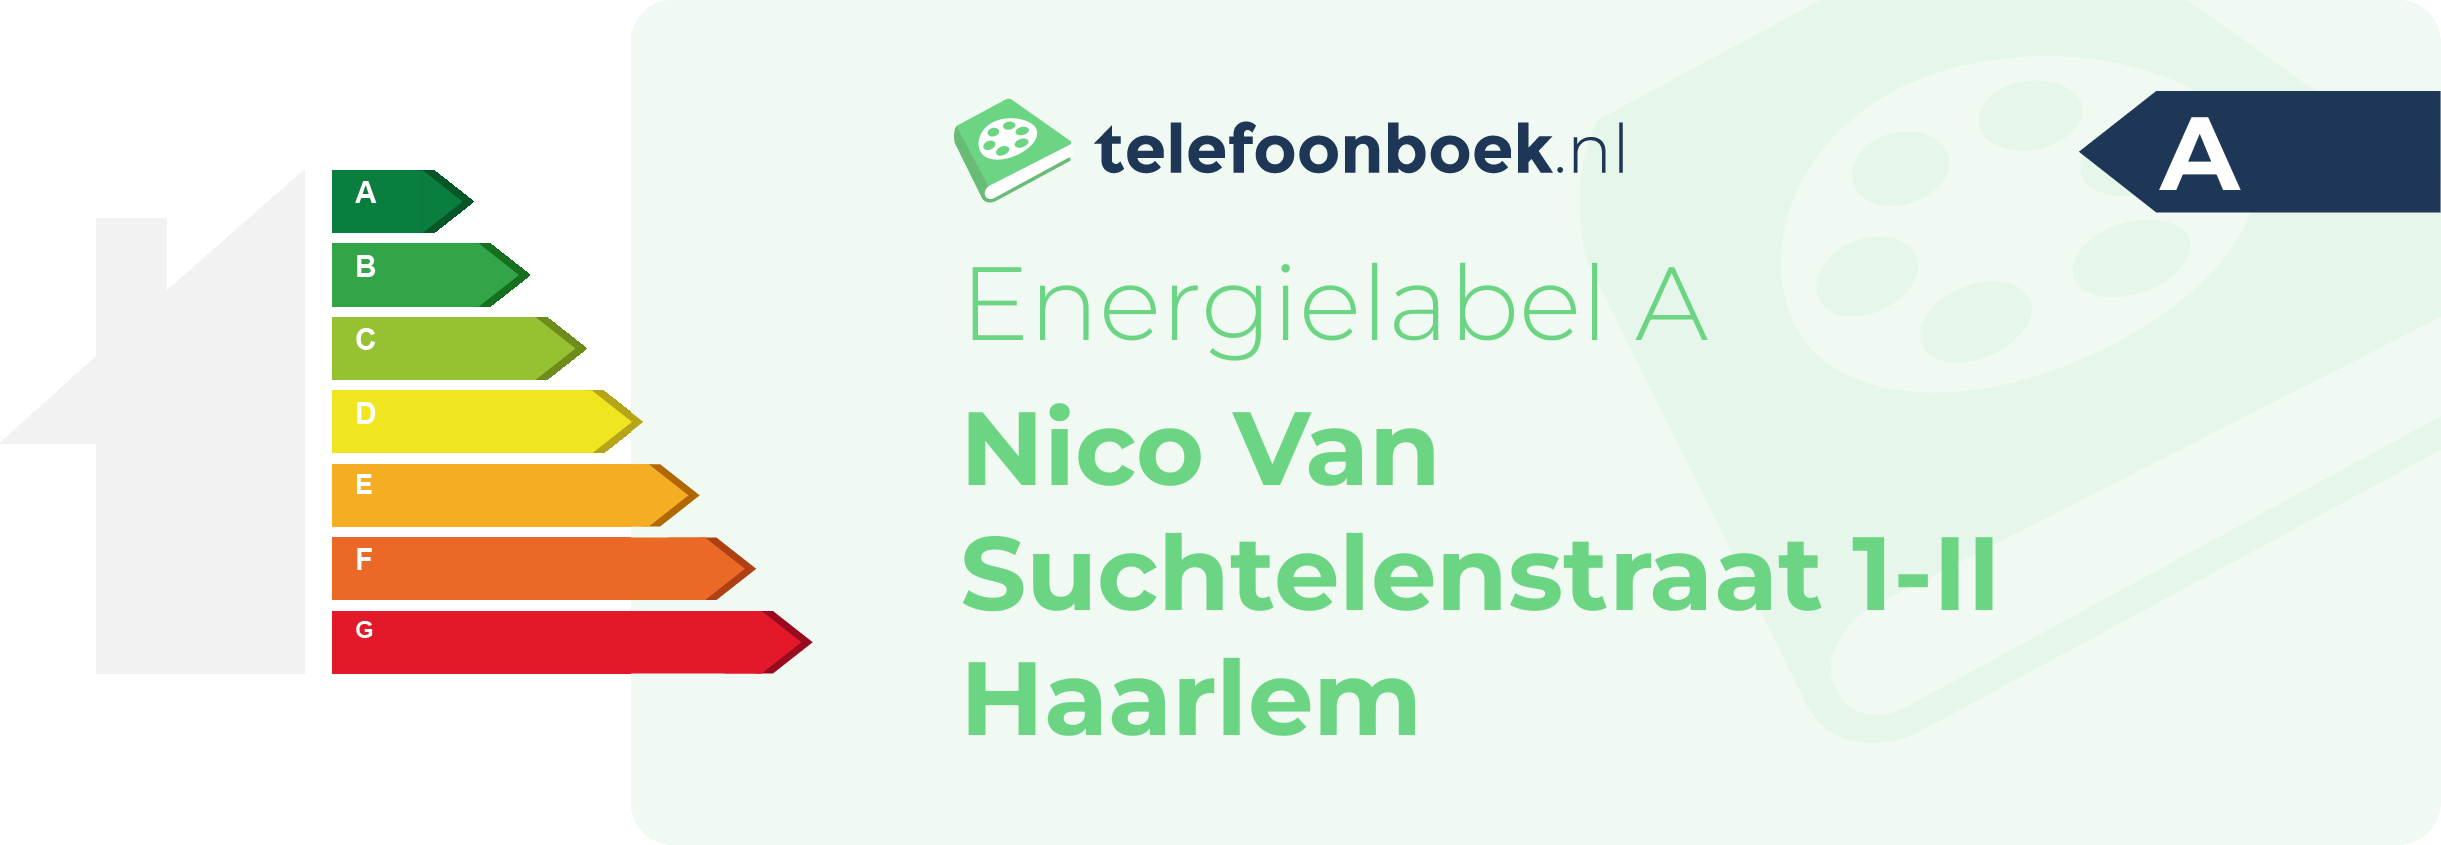 Energielabel Nico Van Suchtelenstraat 1-II Haarlem